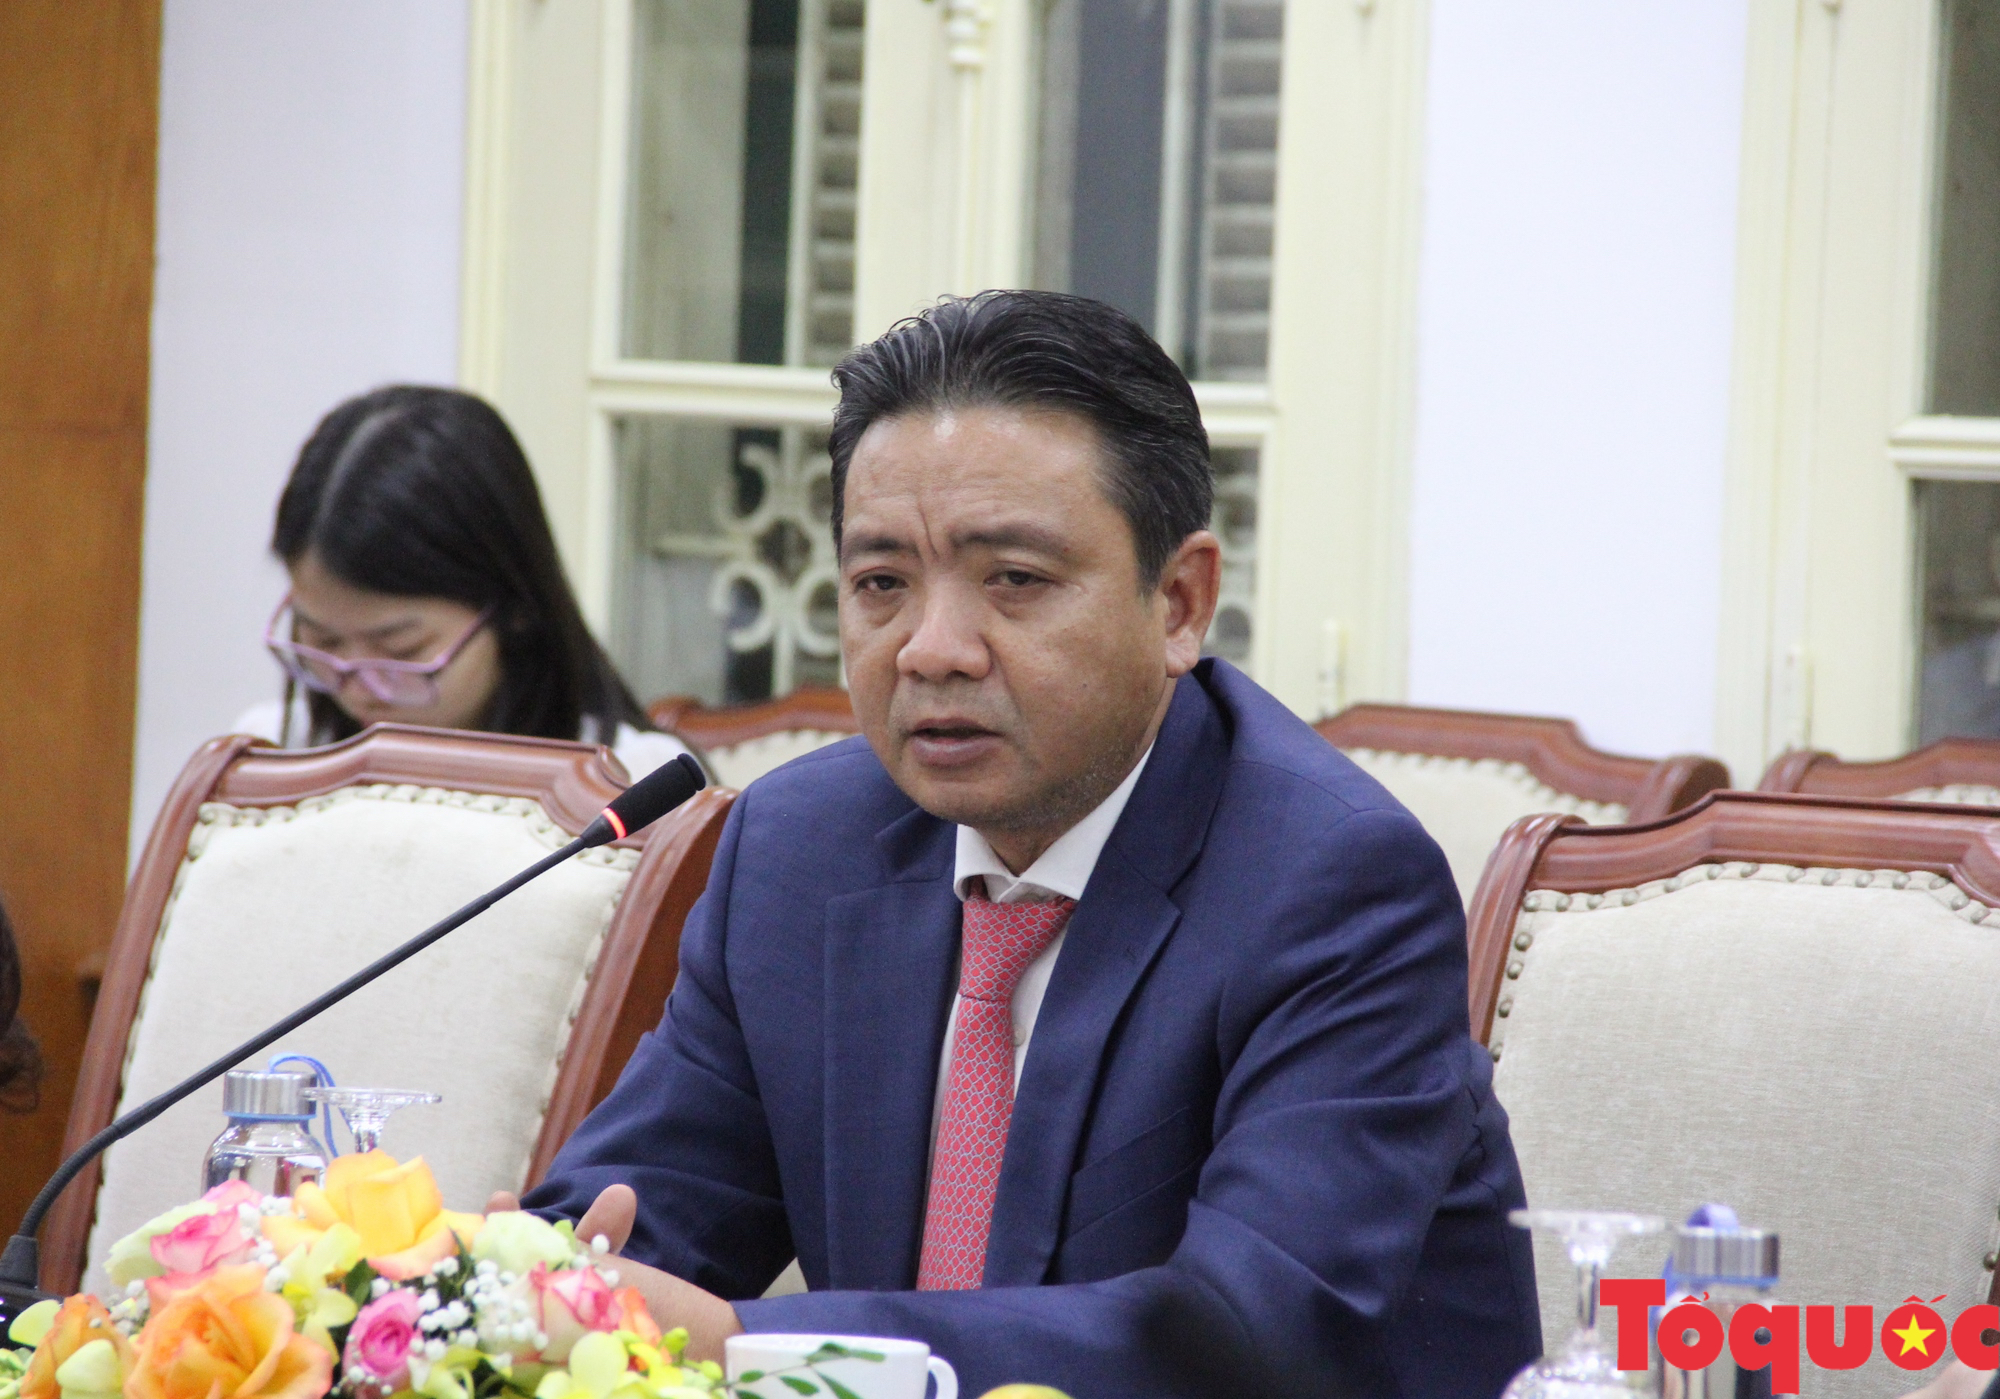 Thứ trưởng Hoàng Đạo Cương: Việt Nam luôn mong nhận được sự hỗ trợ của quốc tế trong công cuộc bảo tồn, phát huy các giá trị di sản - Ảnh 1.